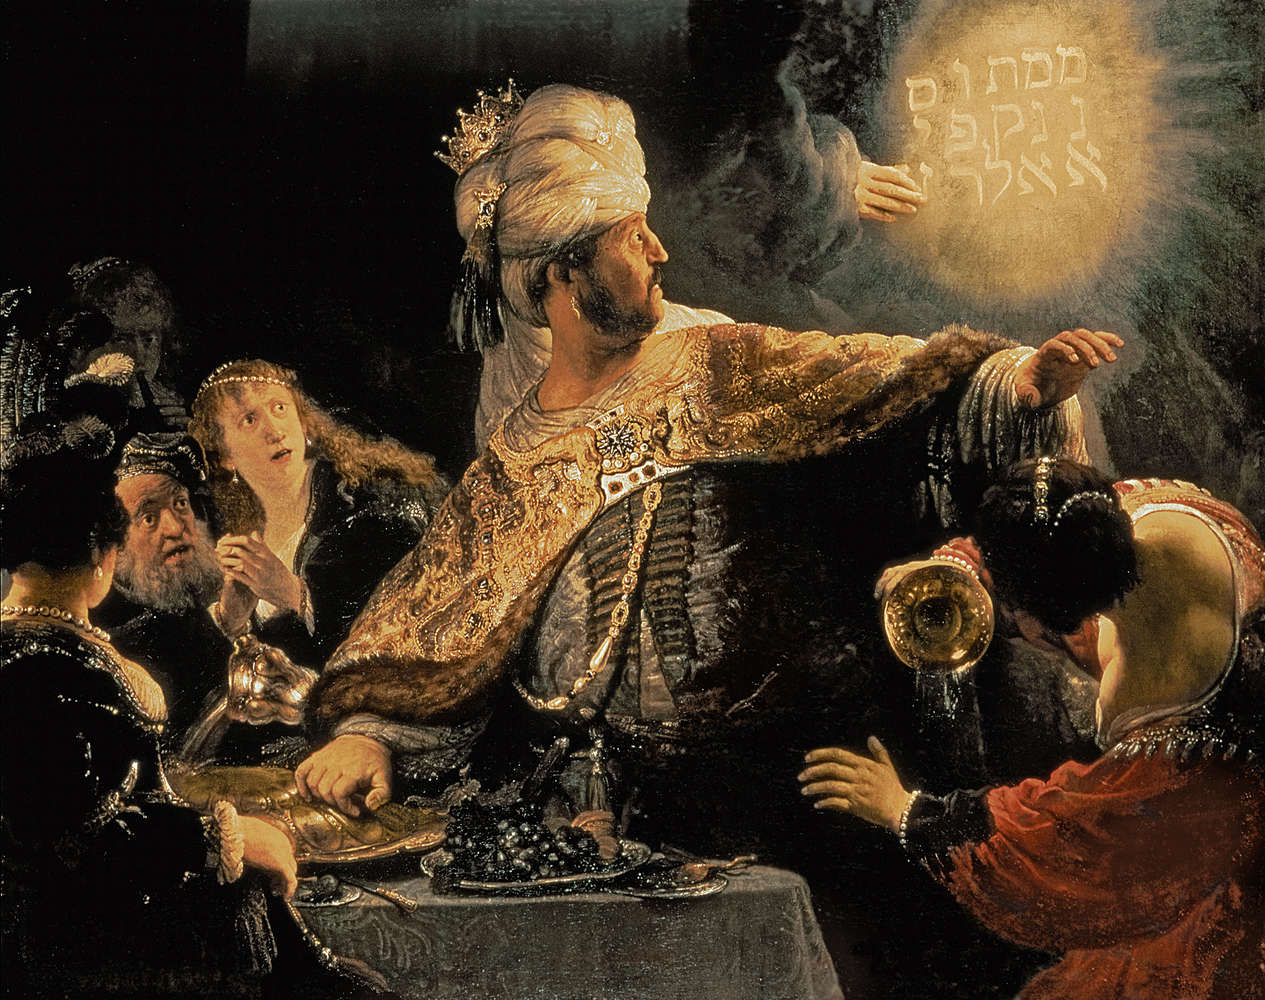             Papier peint panoramique "La fête de Belshazzar" de Rembrandt van Rijn
        